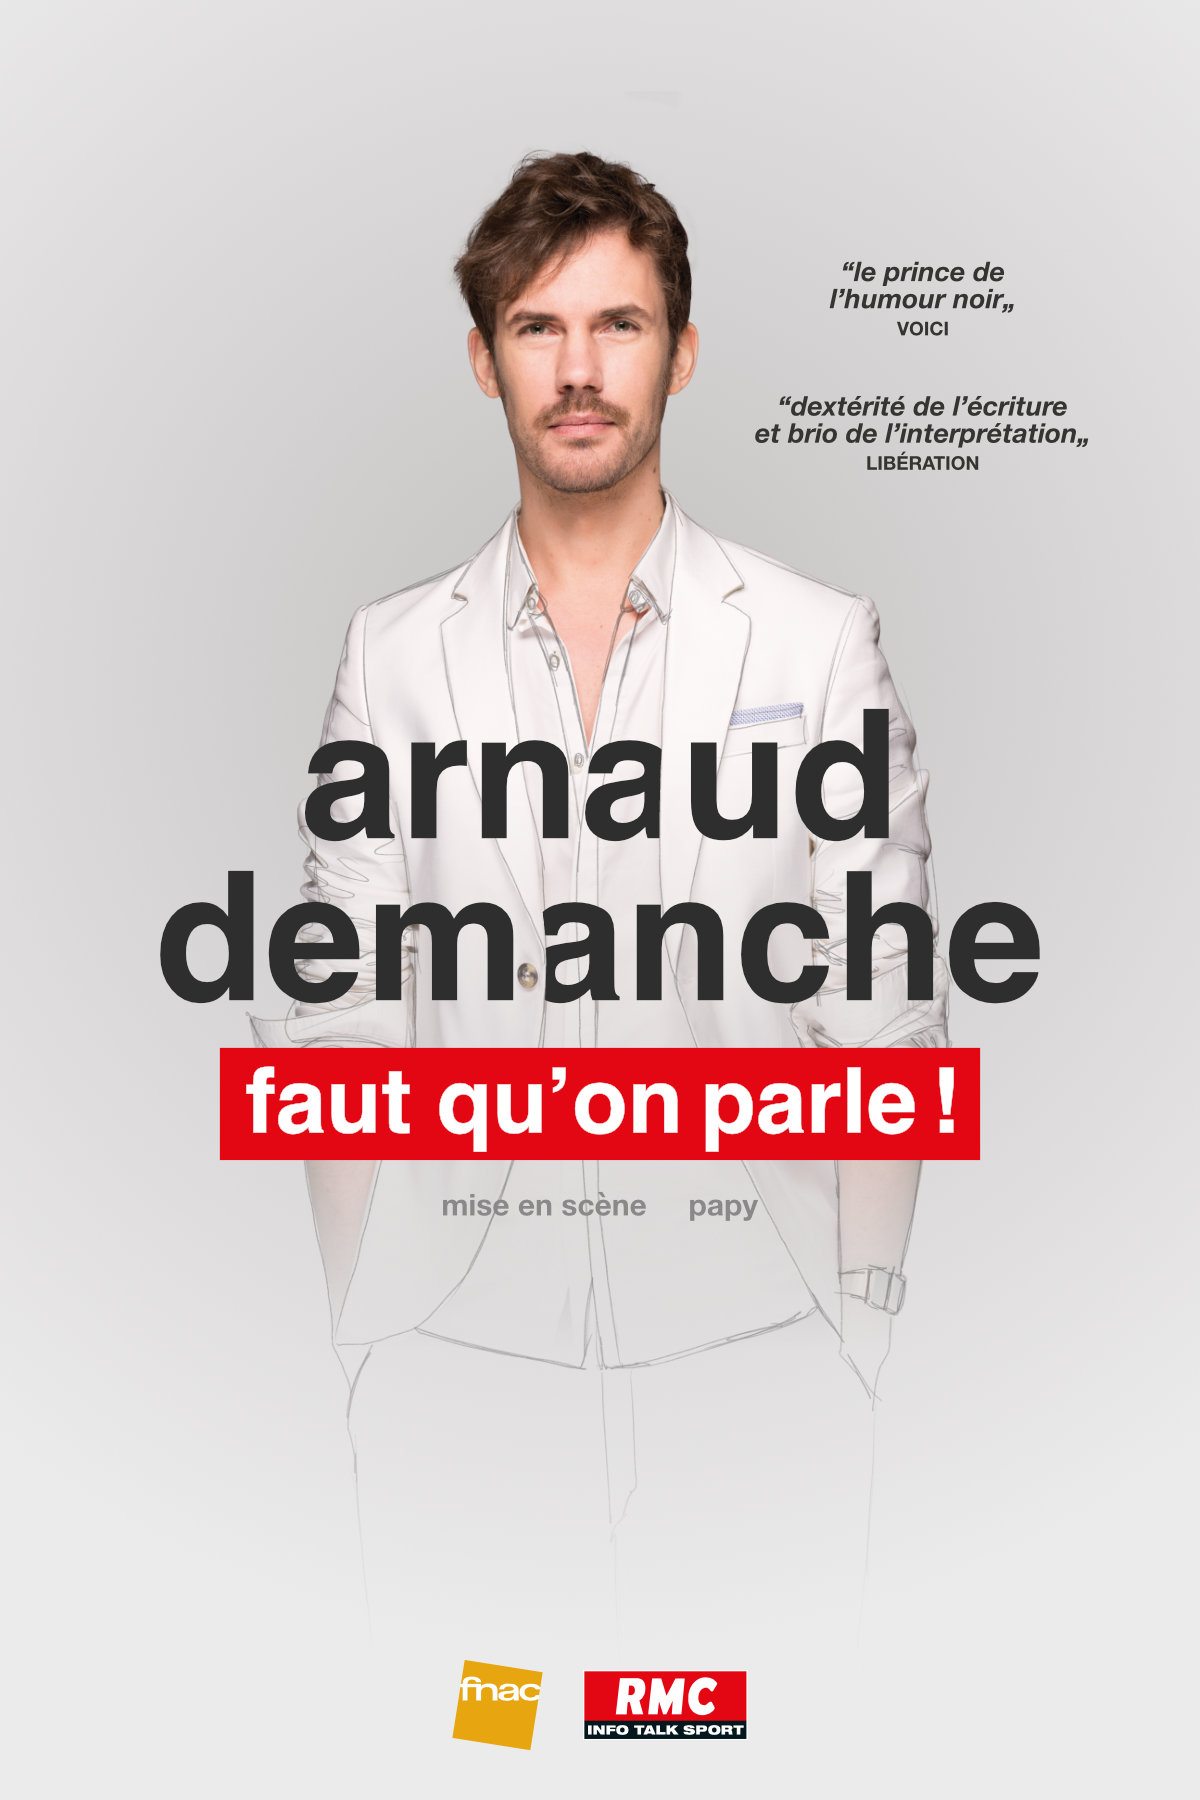 Arnaud Demanche - "Faut qu'on parle"